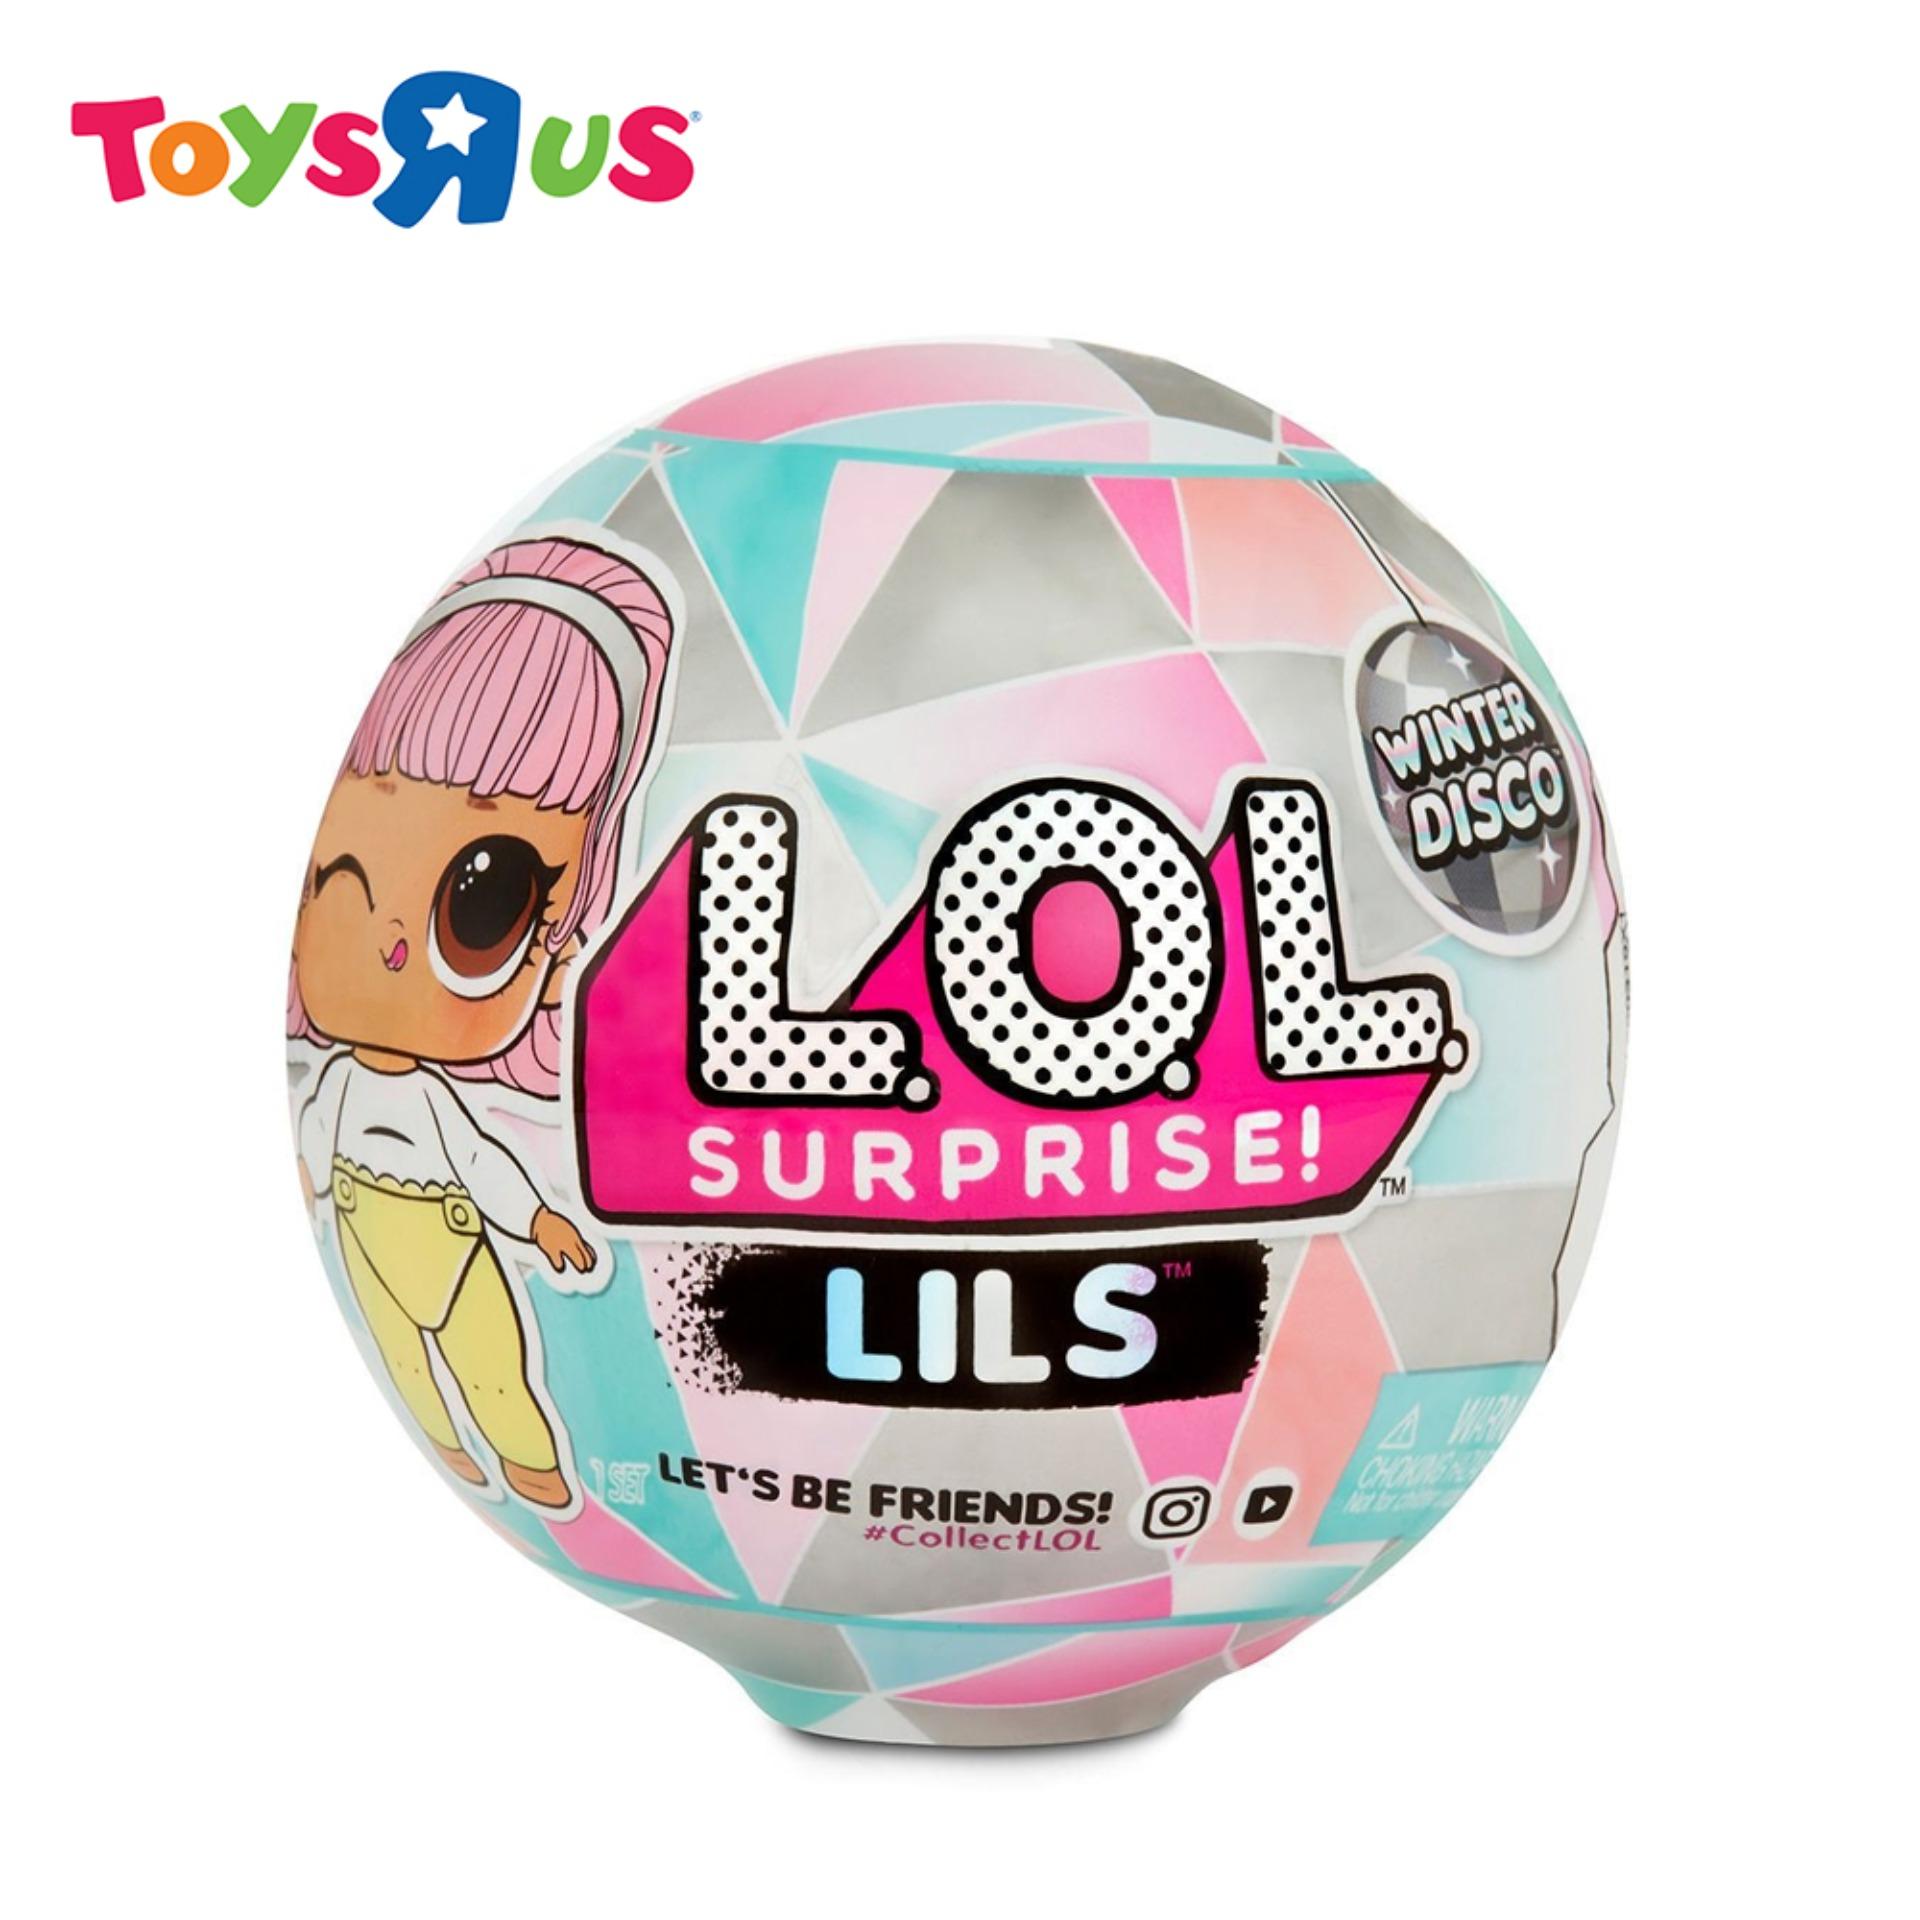 L.O.L. Surprise! Lils Winter Disco Series | Toys R Us